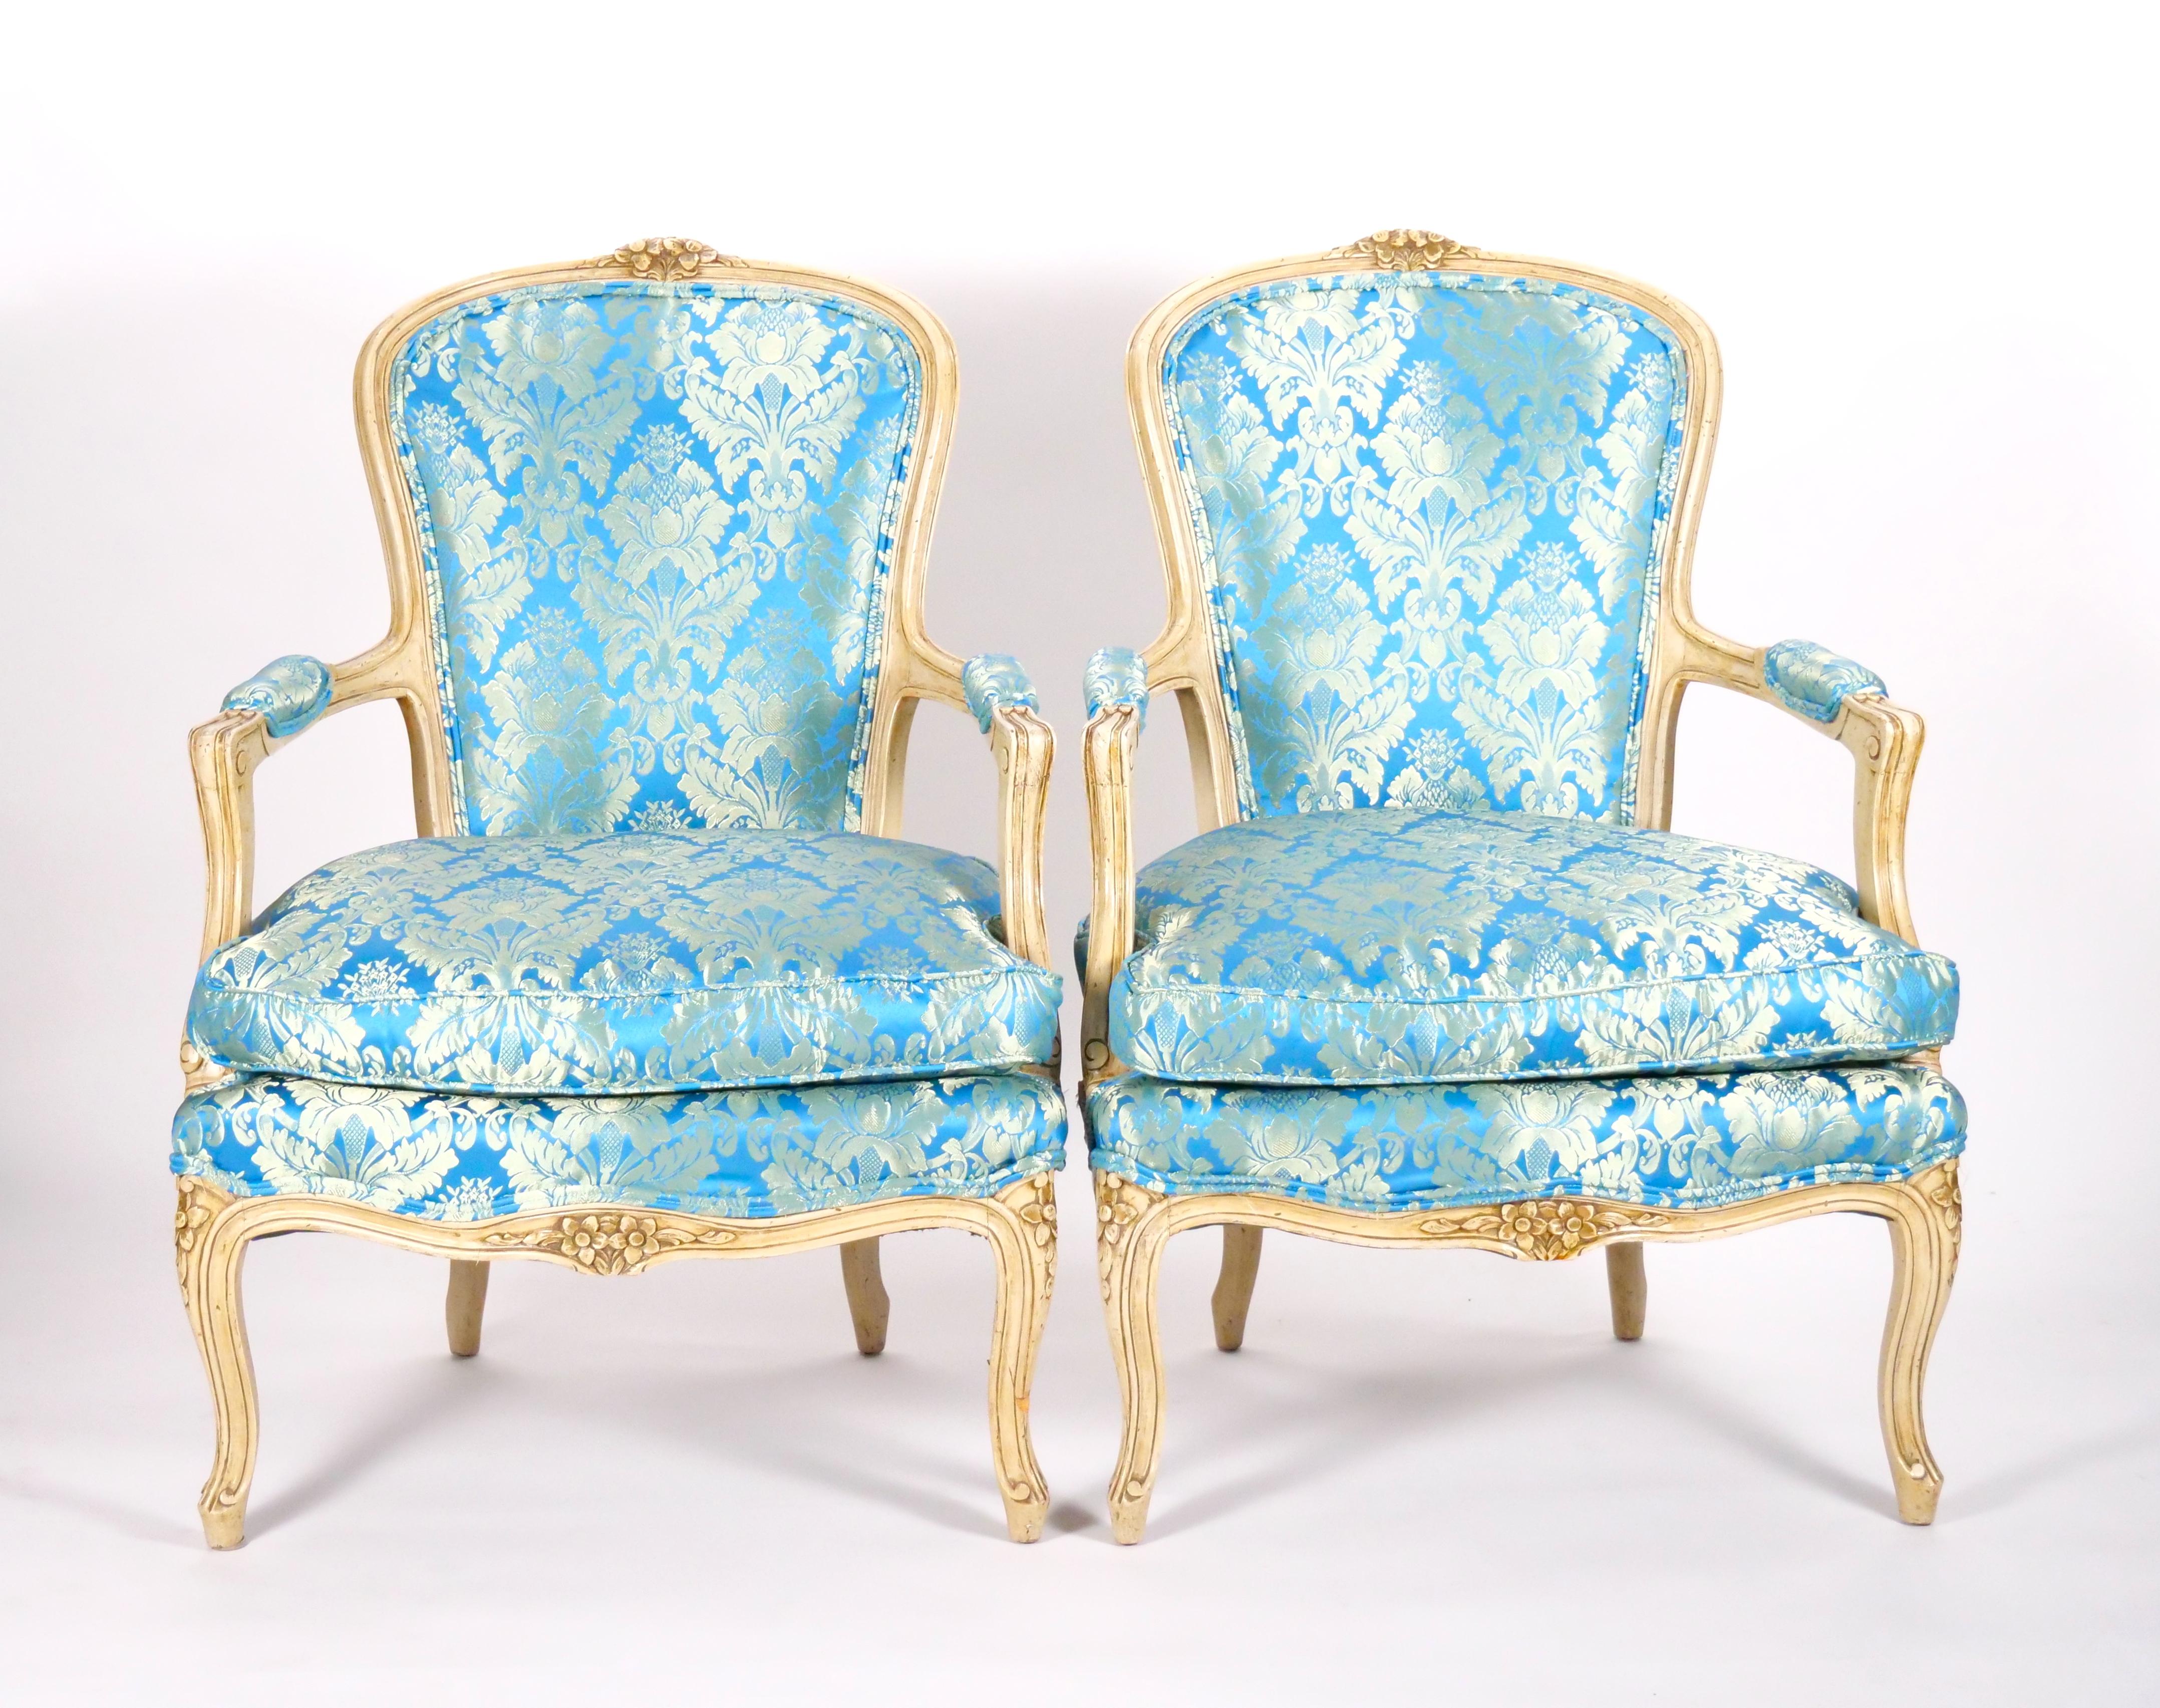 Améliorez votre intérieur avec cette paire d'anciens fauteuils à accoudoirs du XIXe siècle, conçus dans le style Louis XV. Ces chaises sont plus que de simples sièges, ce sont des œuvres d'art méticuleusement fabriquées avec le souci du détail et un